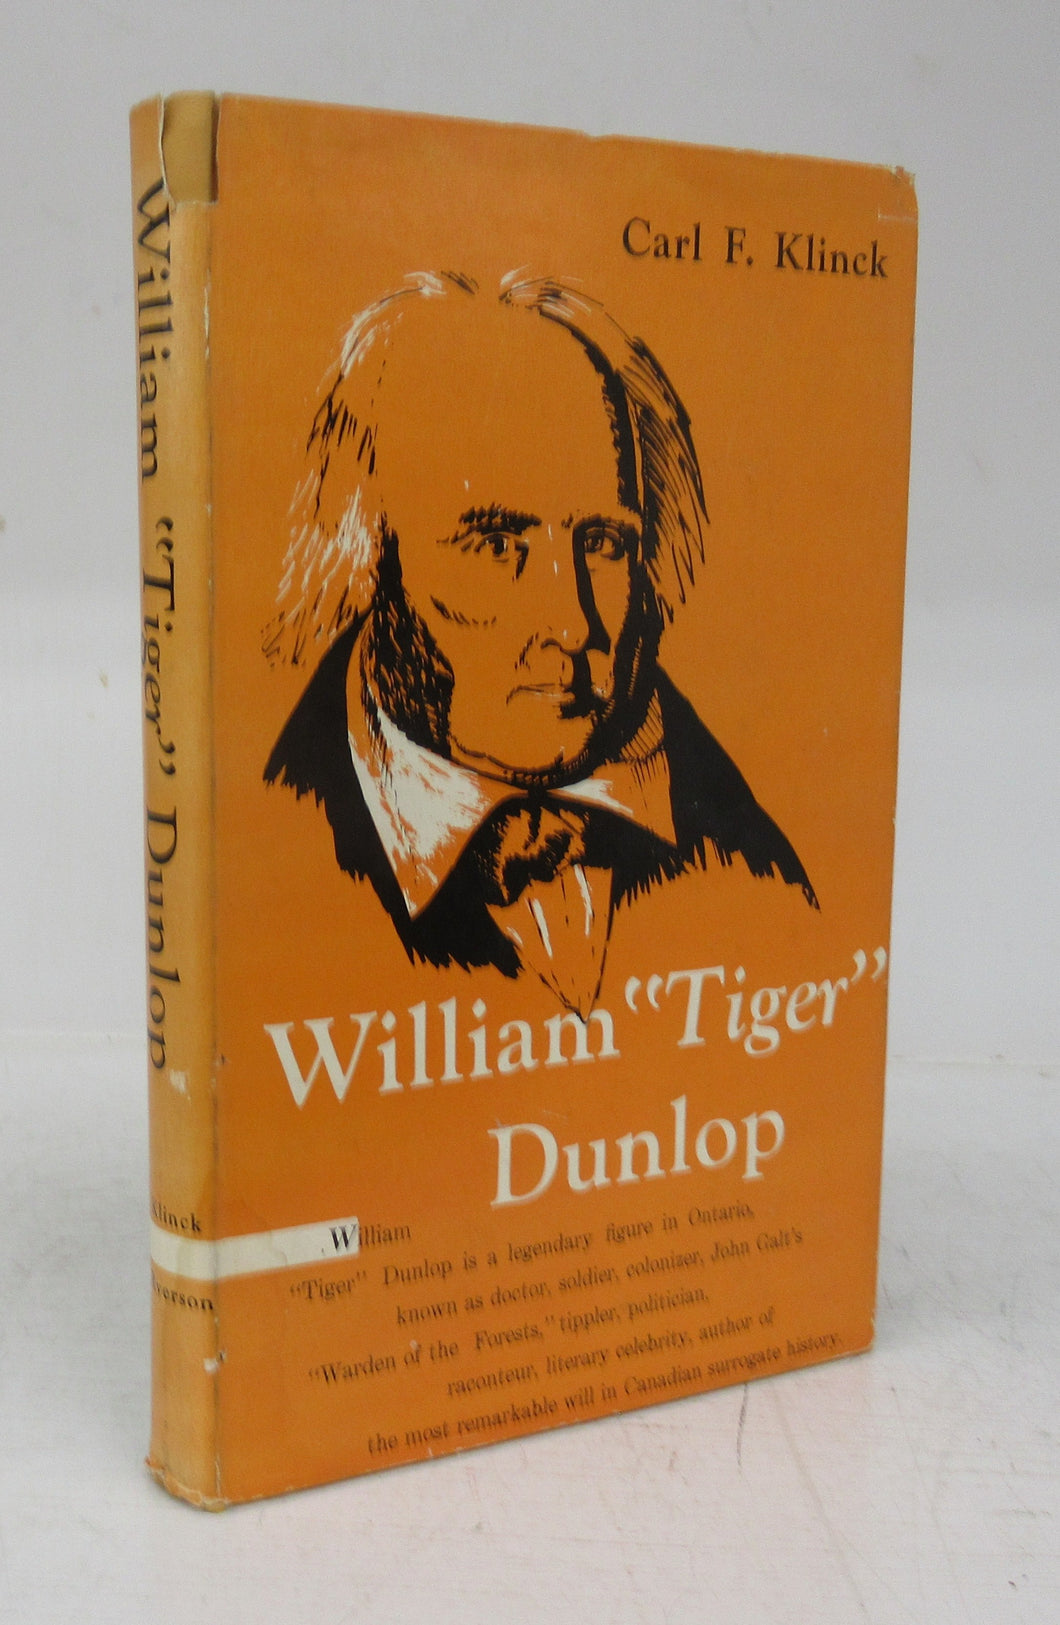 William 'Tiger' Dunlop